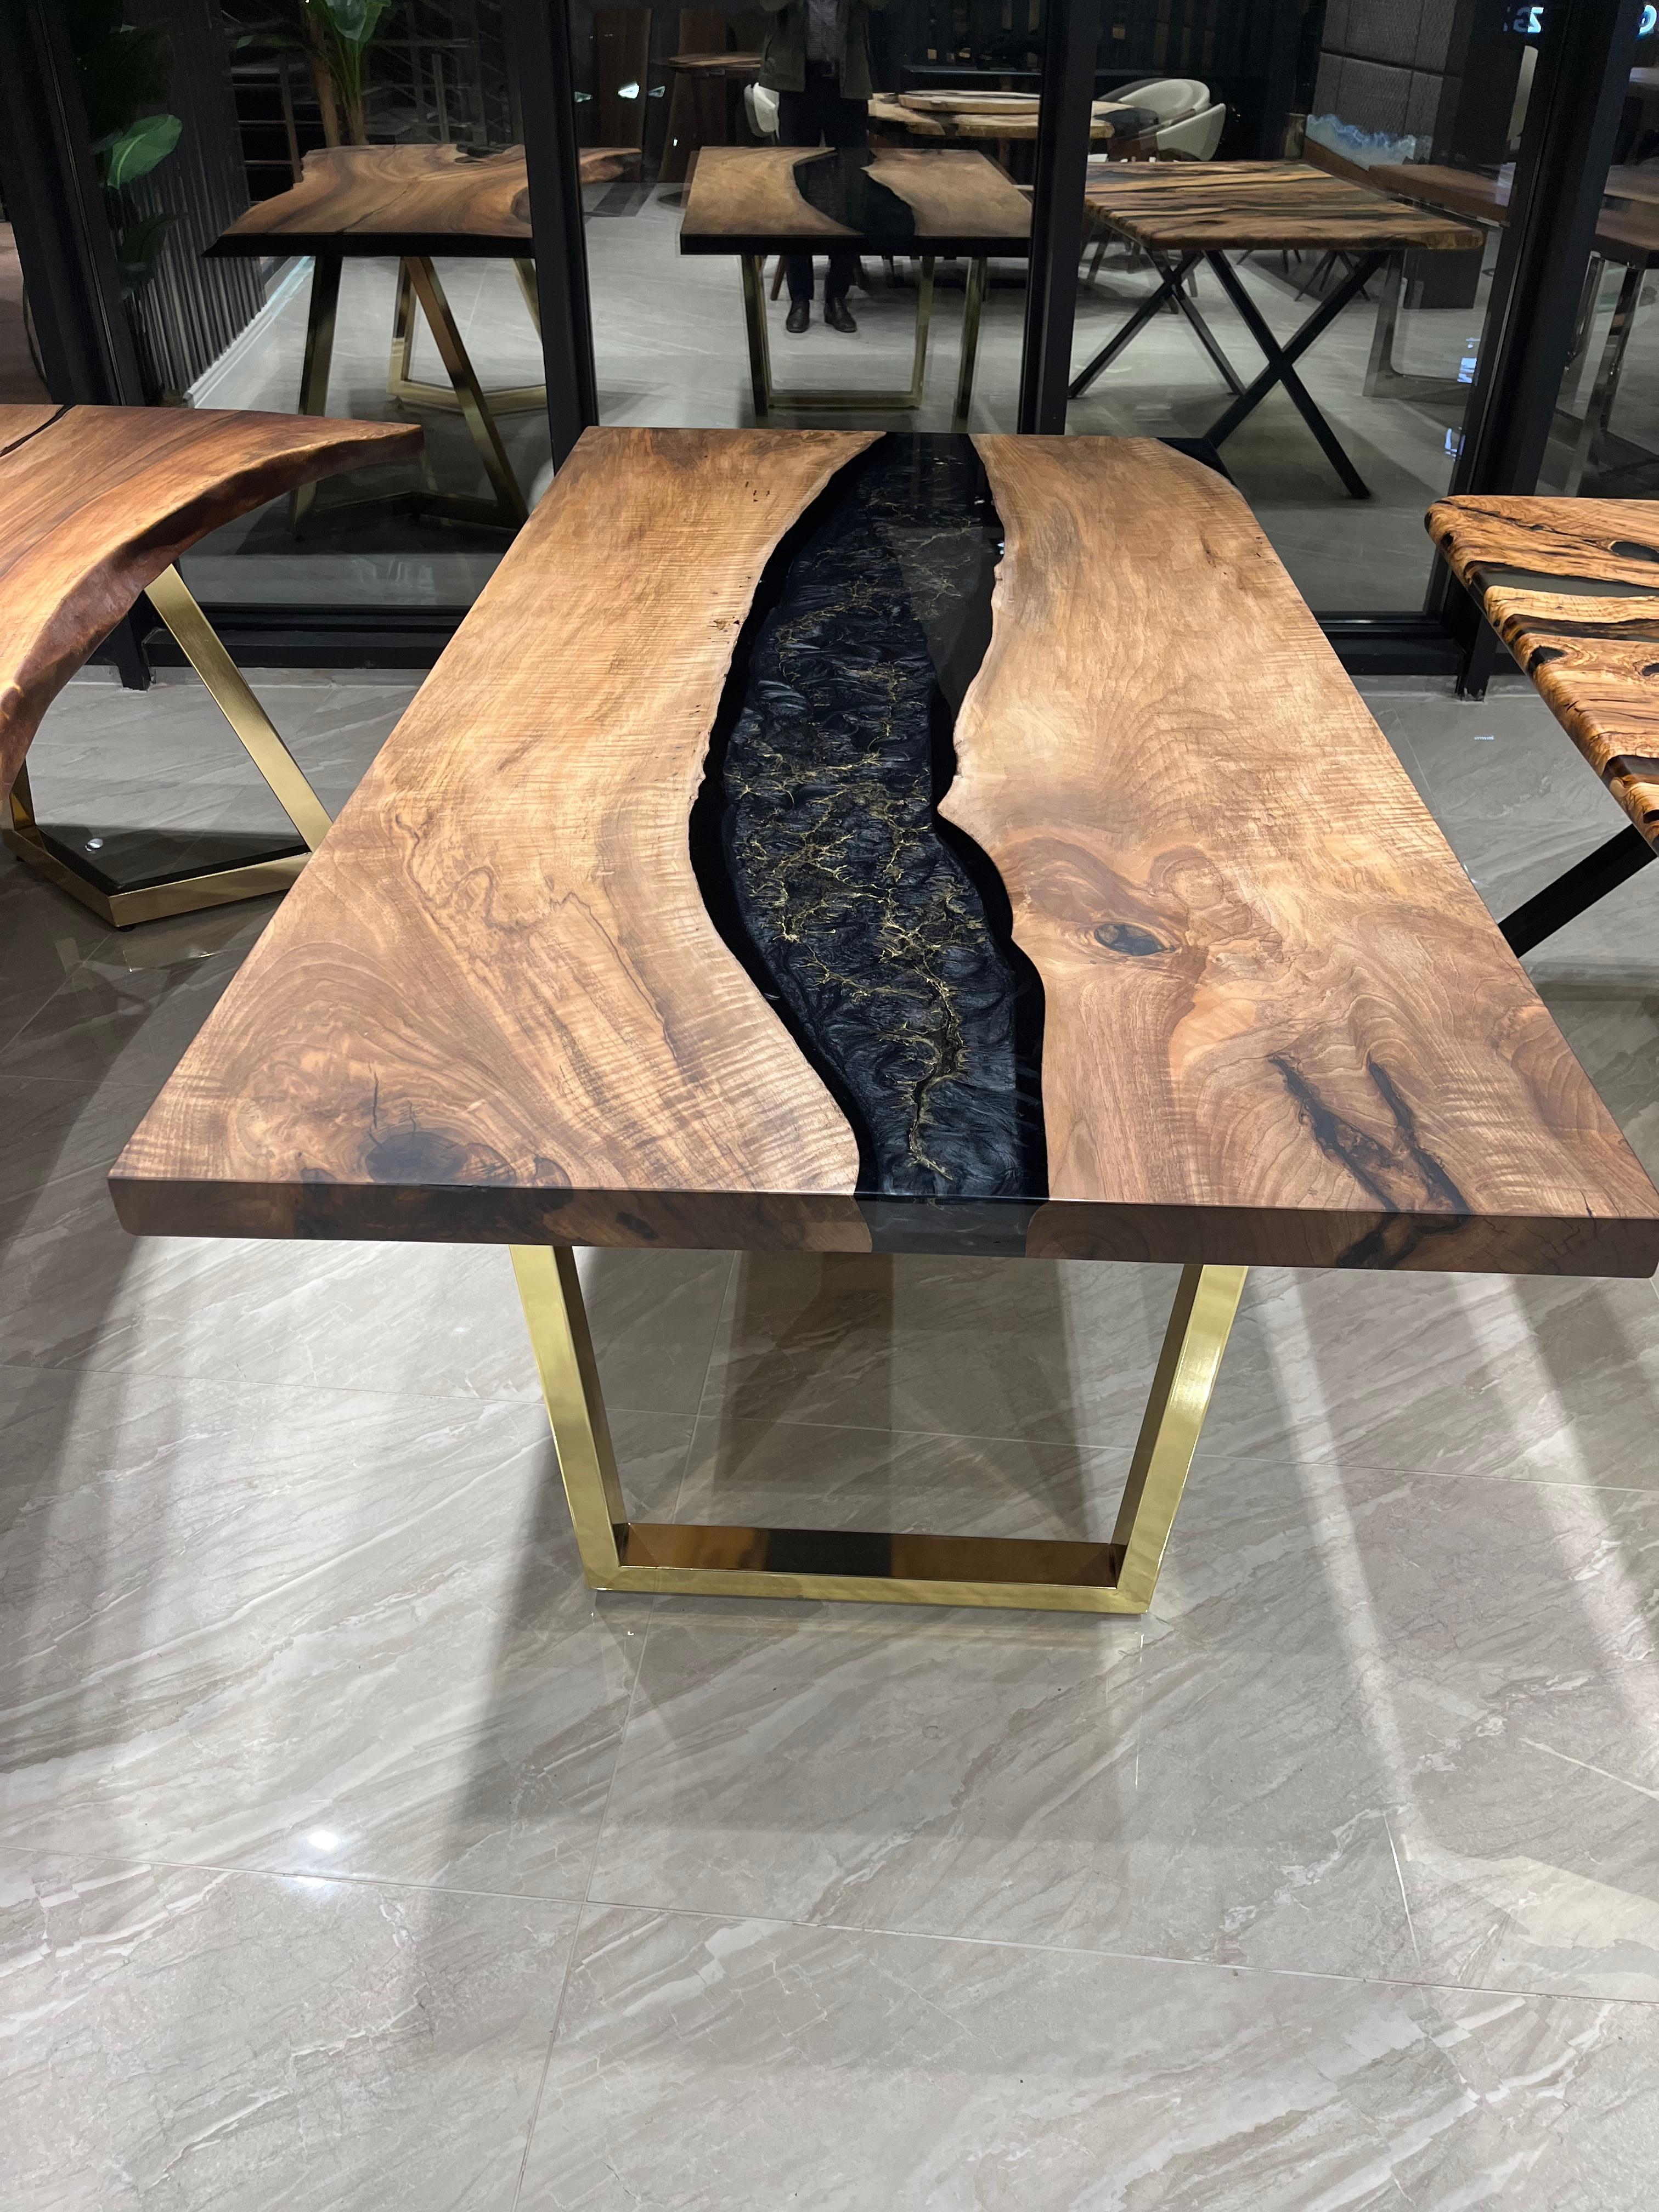 Table en résine époxy noyer

Cette table est fabriquée en bois de noyer. Nous avons appliqué une couleur époxy noir et or.

Des tailles, des couleurs et des finitions personnalisées sont disponibles !